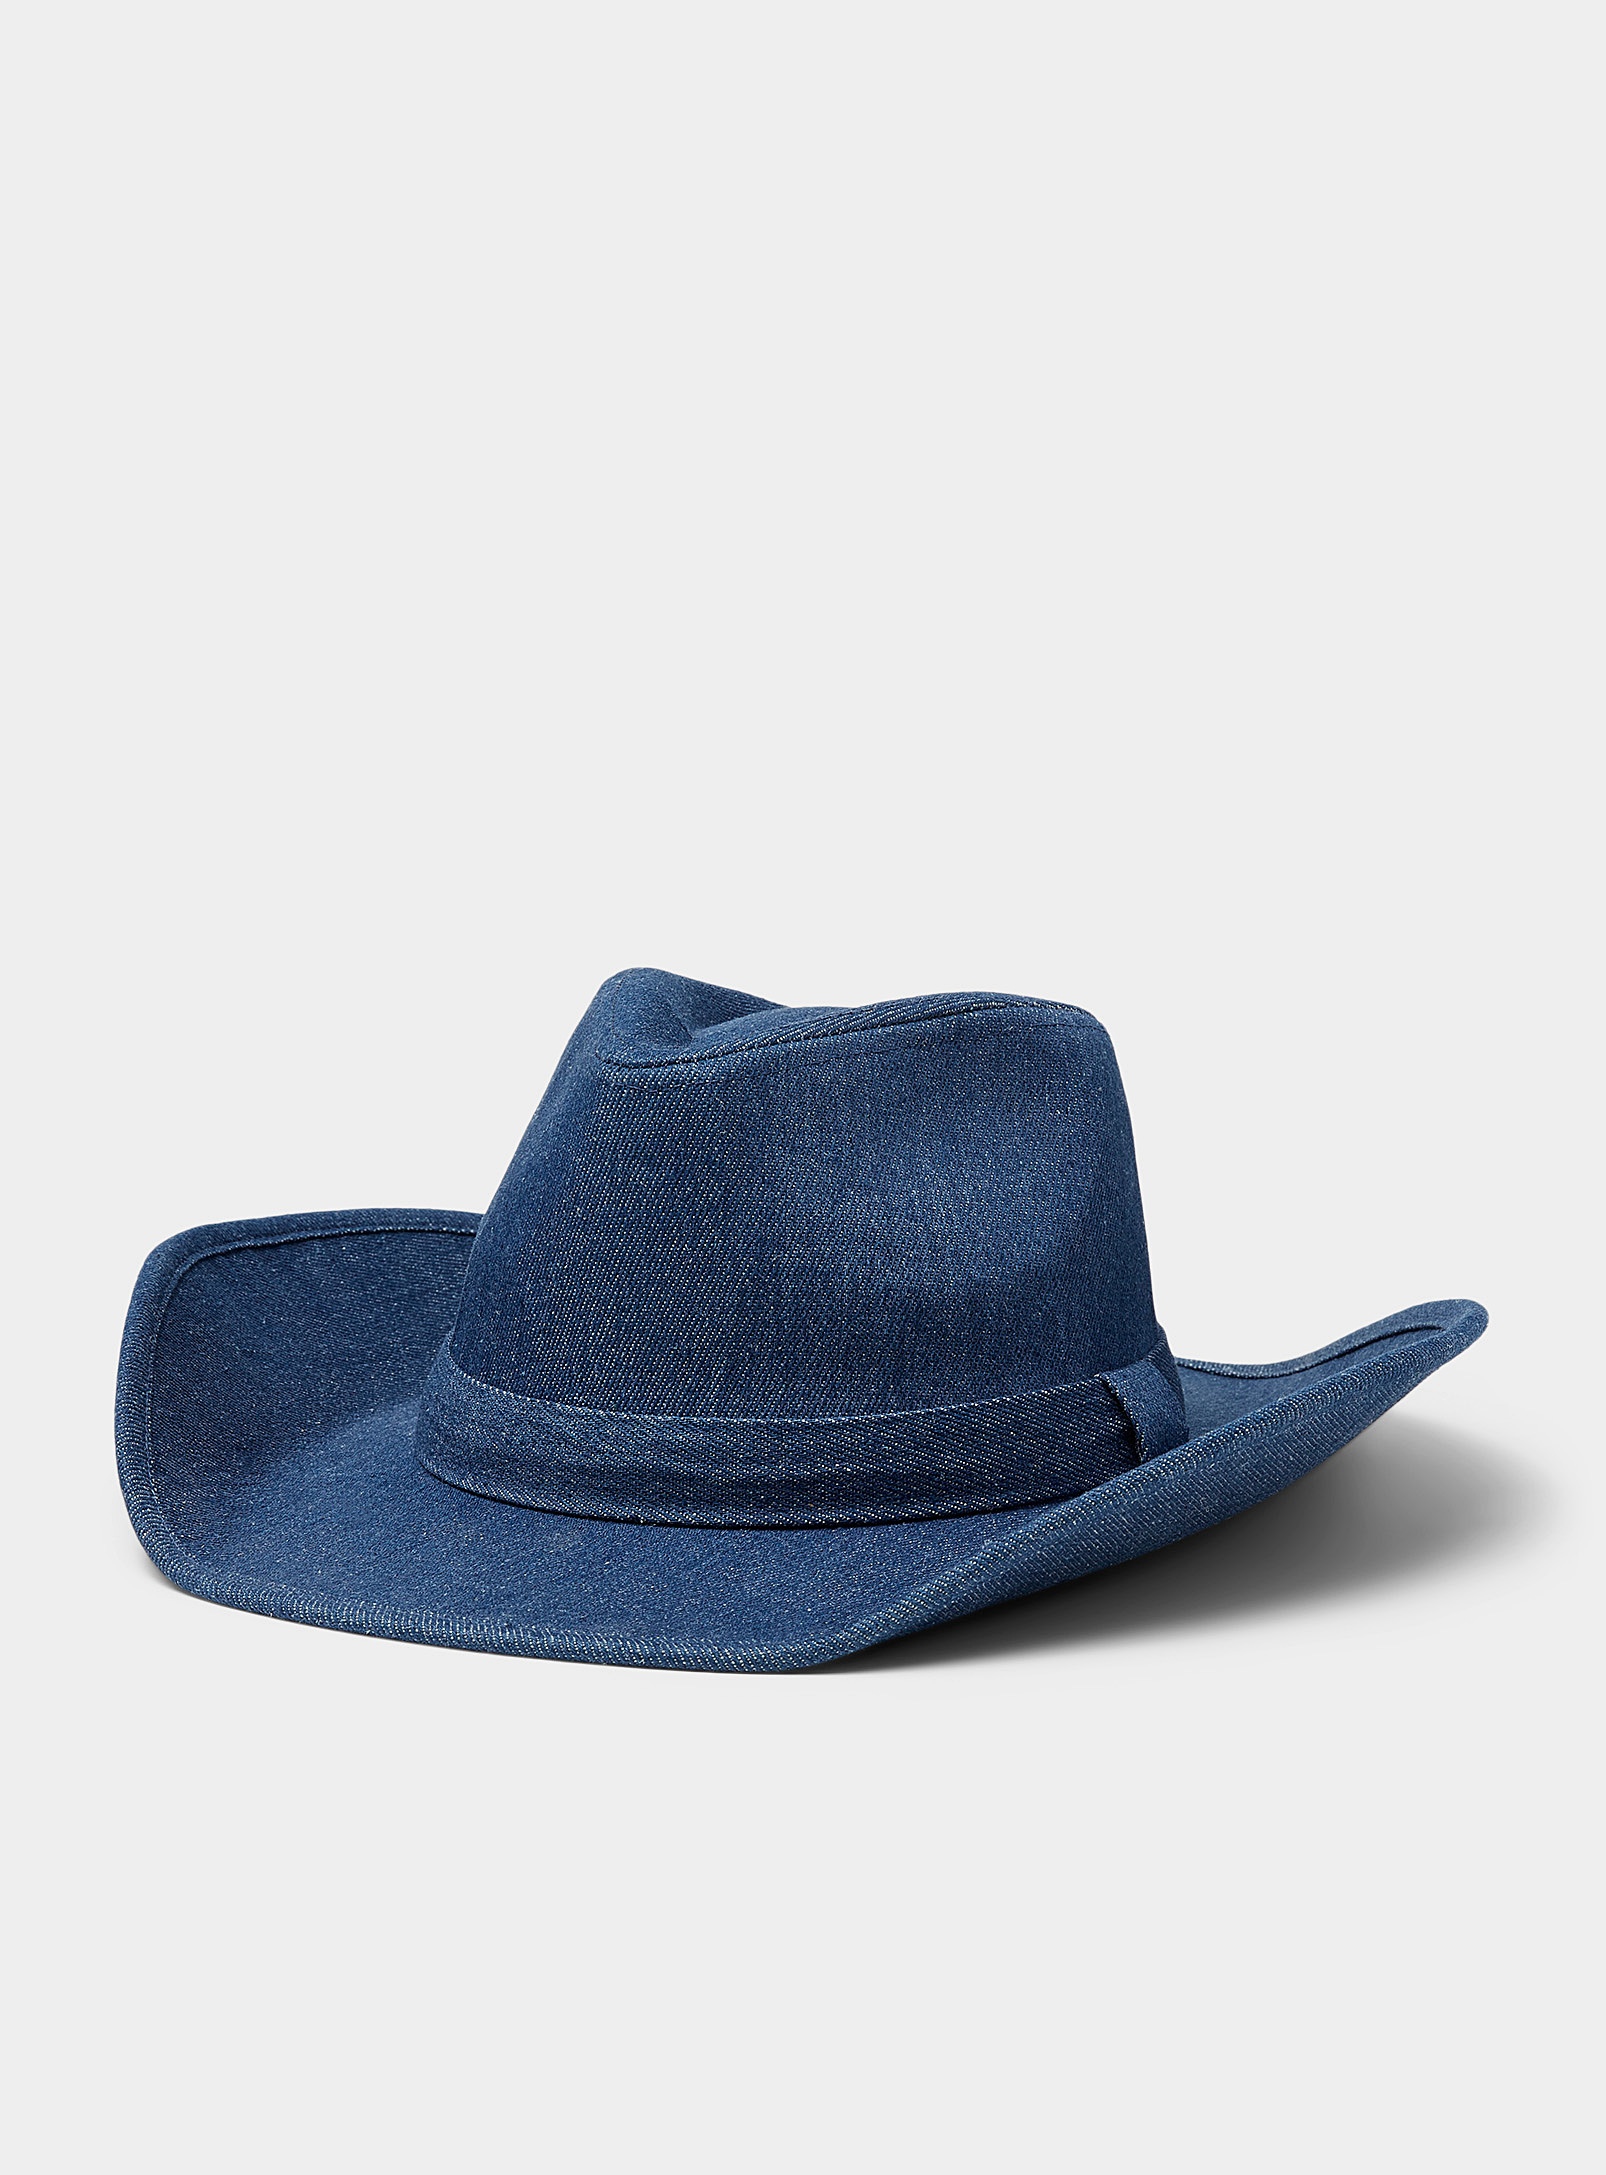 Simons - Le chapeau cowboy denim bleu